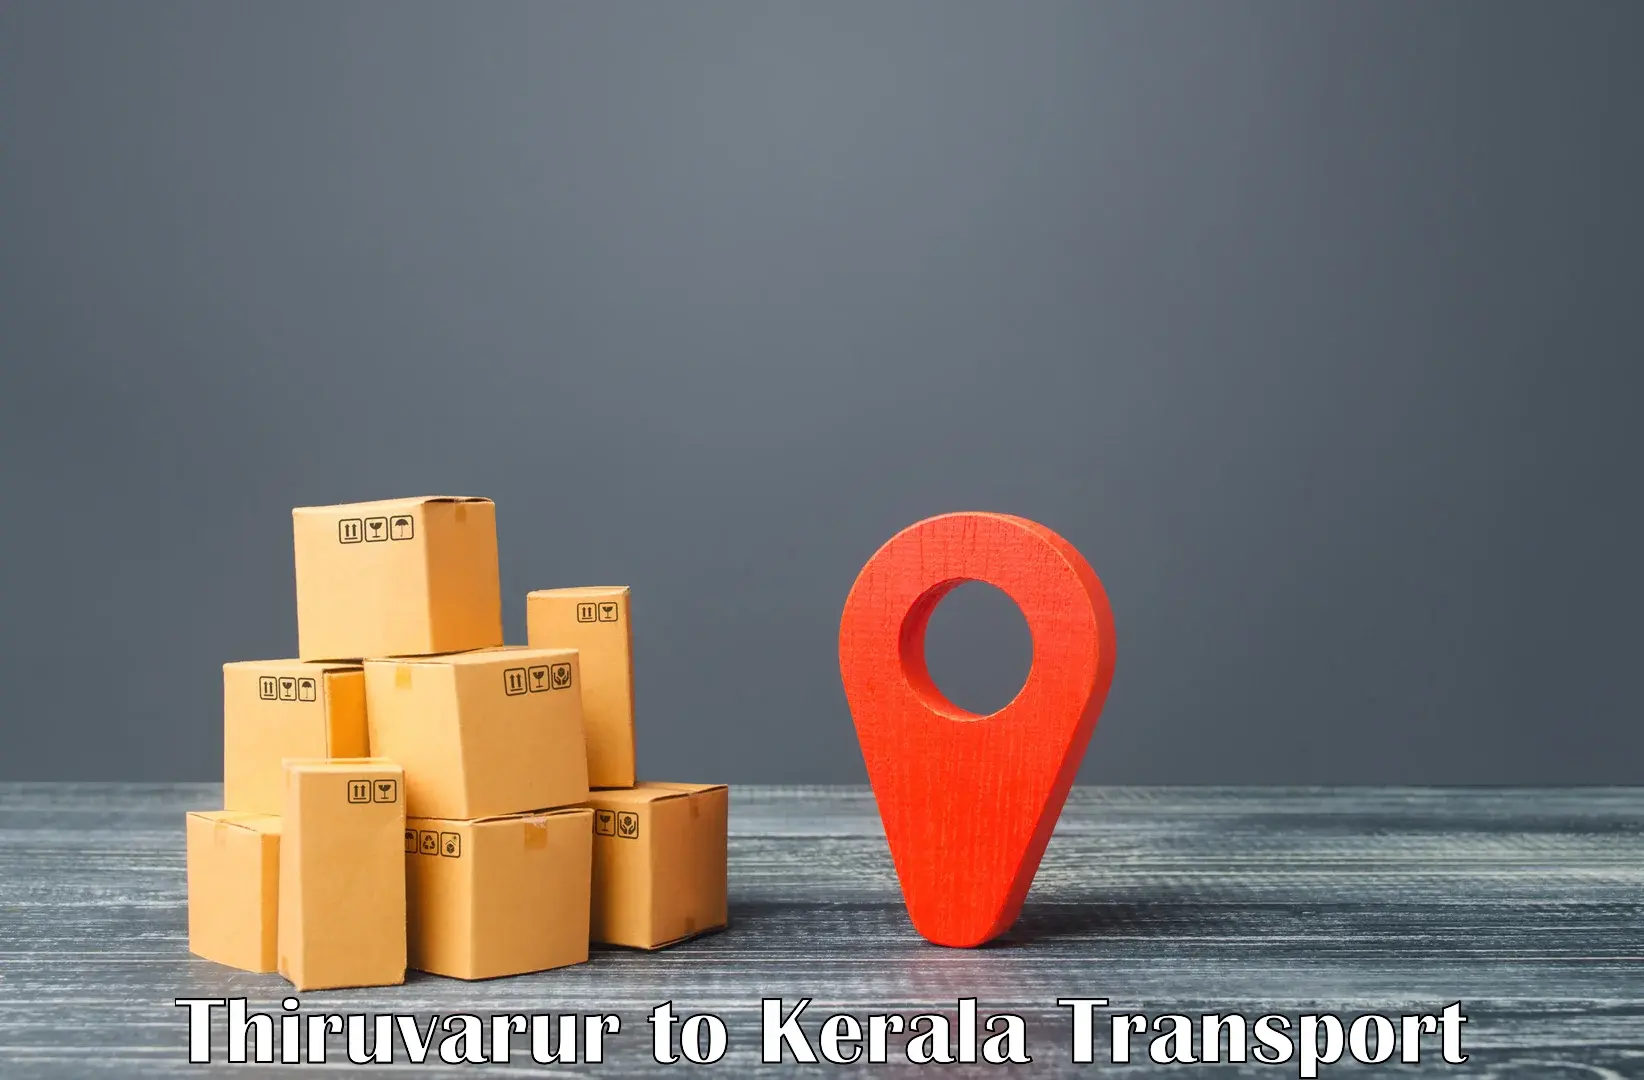 Online transport booking Thiruvarur to Palai